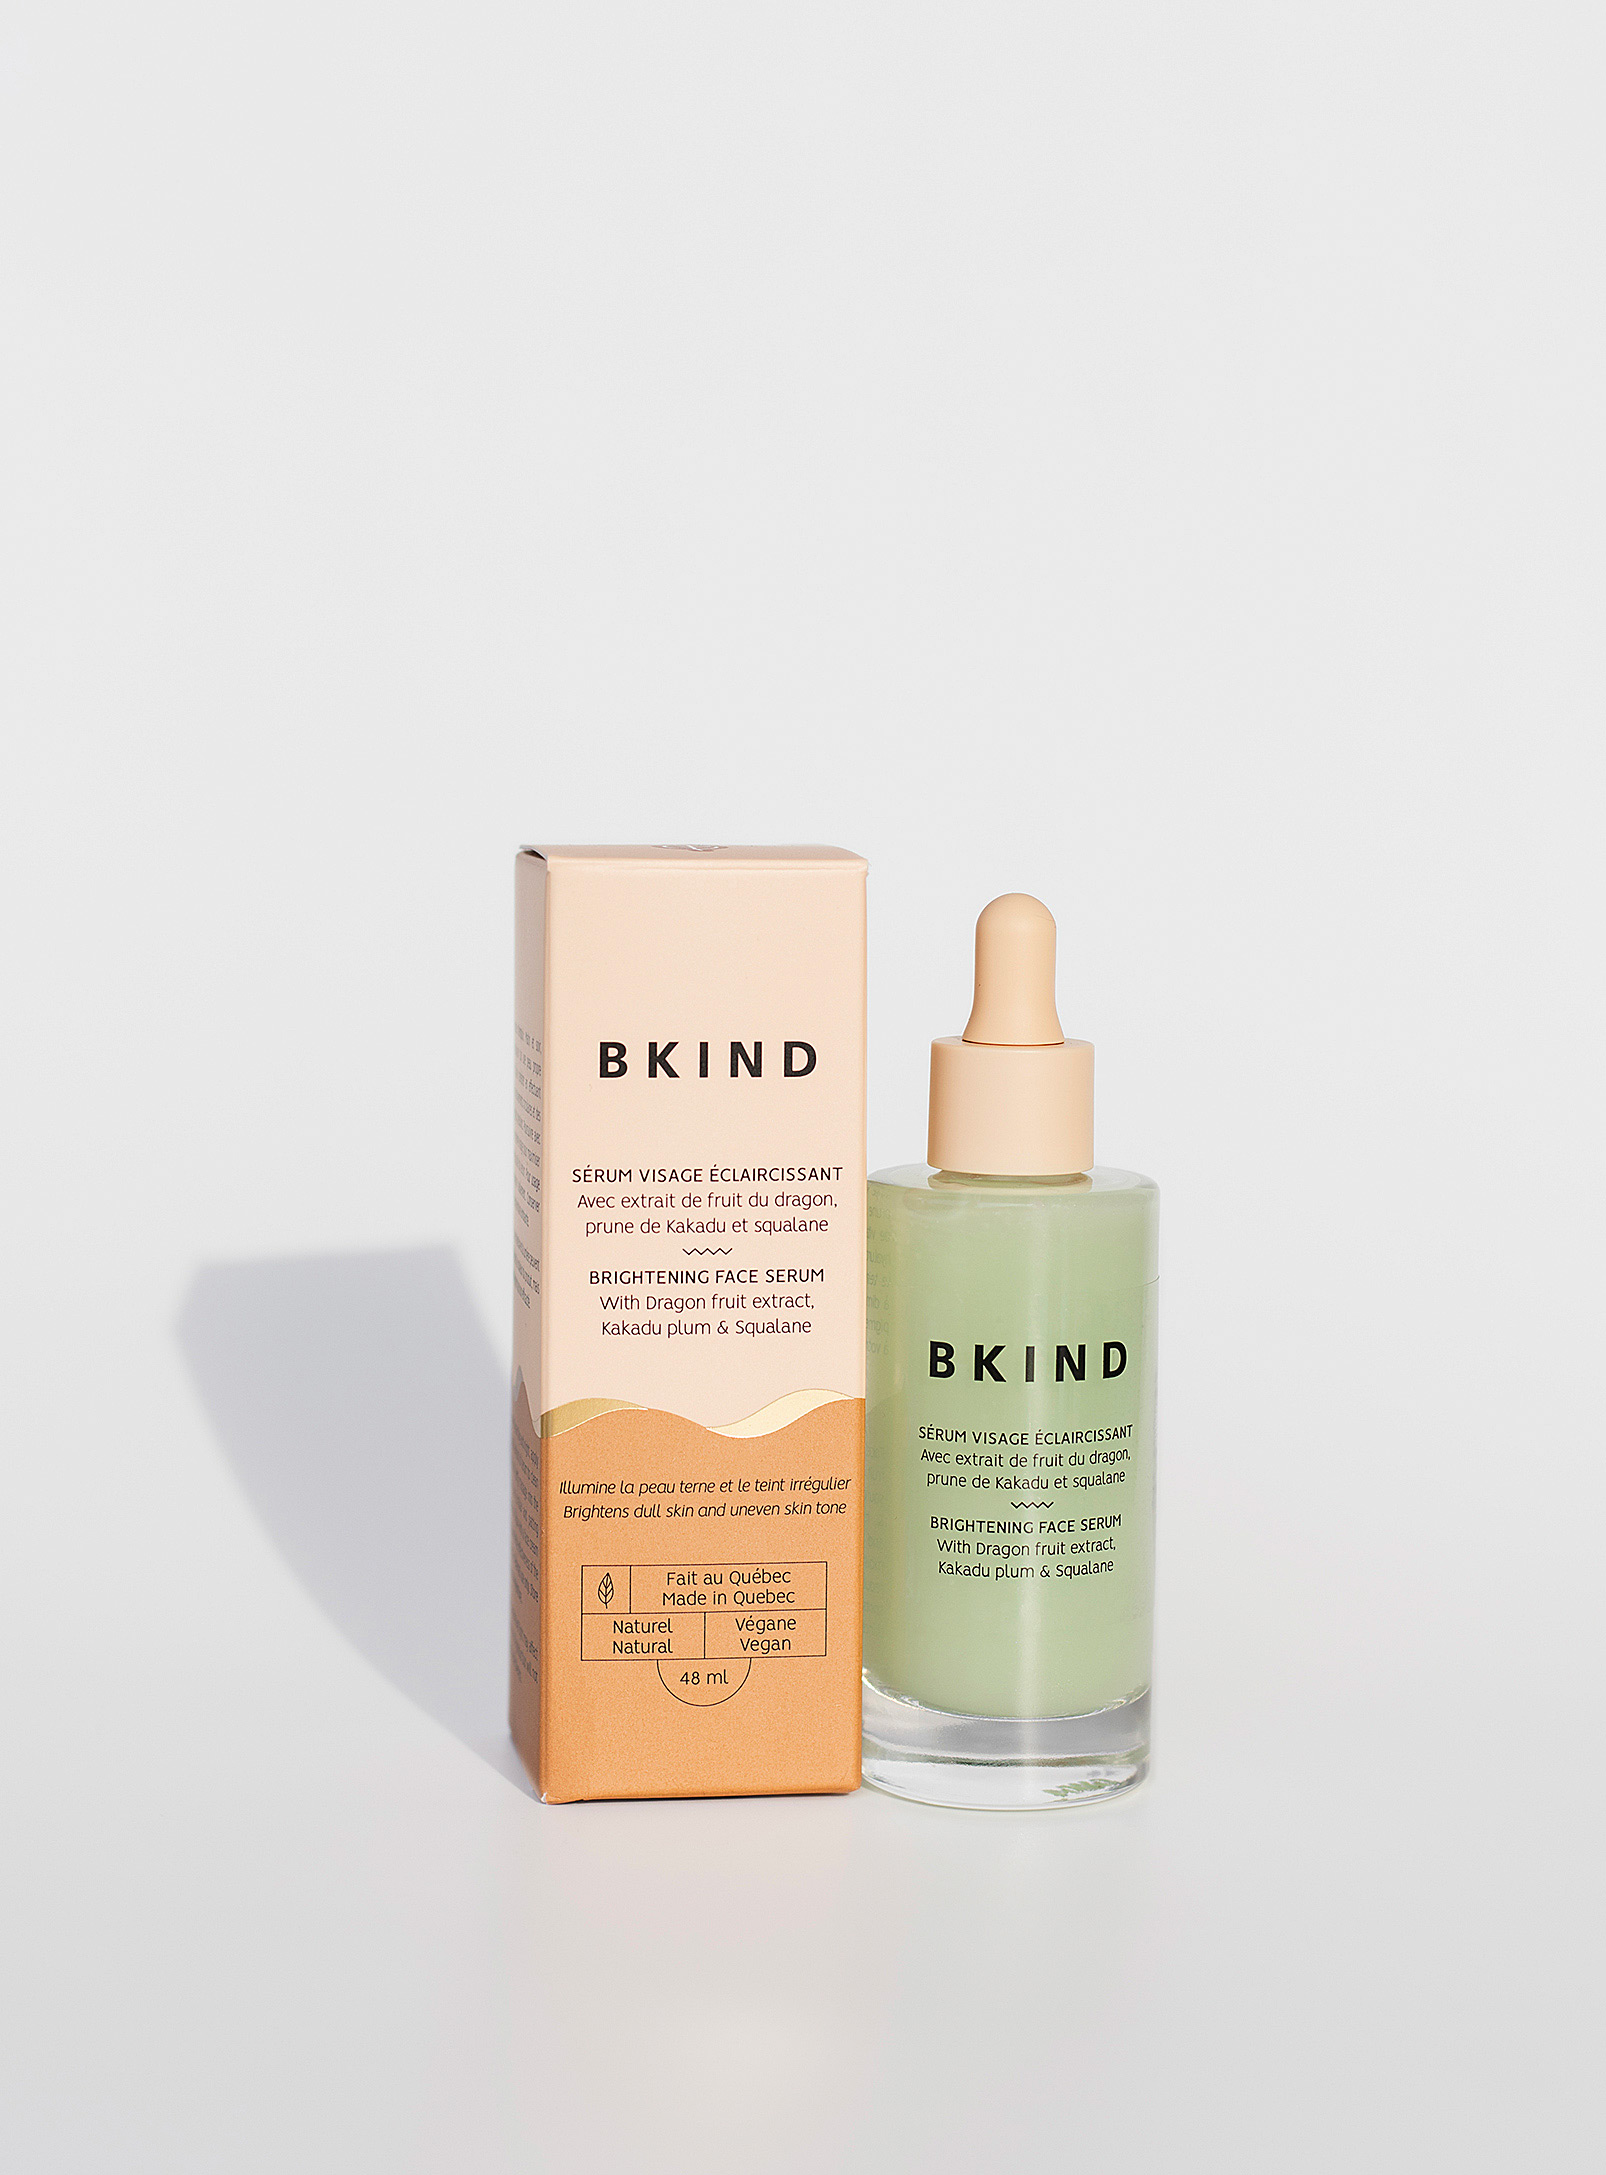 BKIND - Brightening face serum